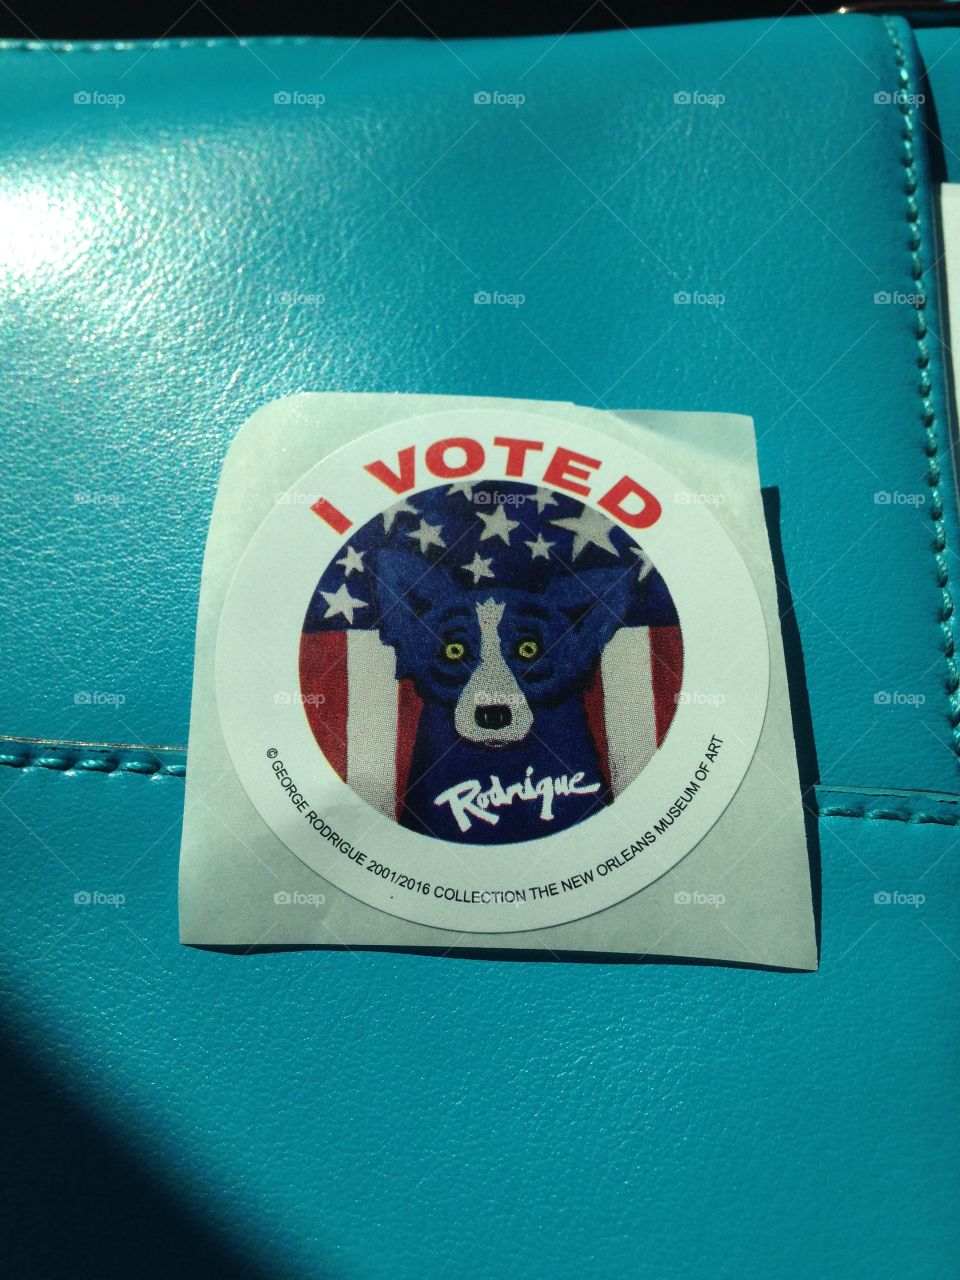 Louisiana Blue Dog I voted sticker 